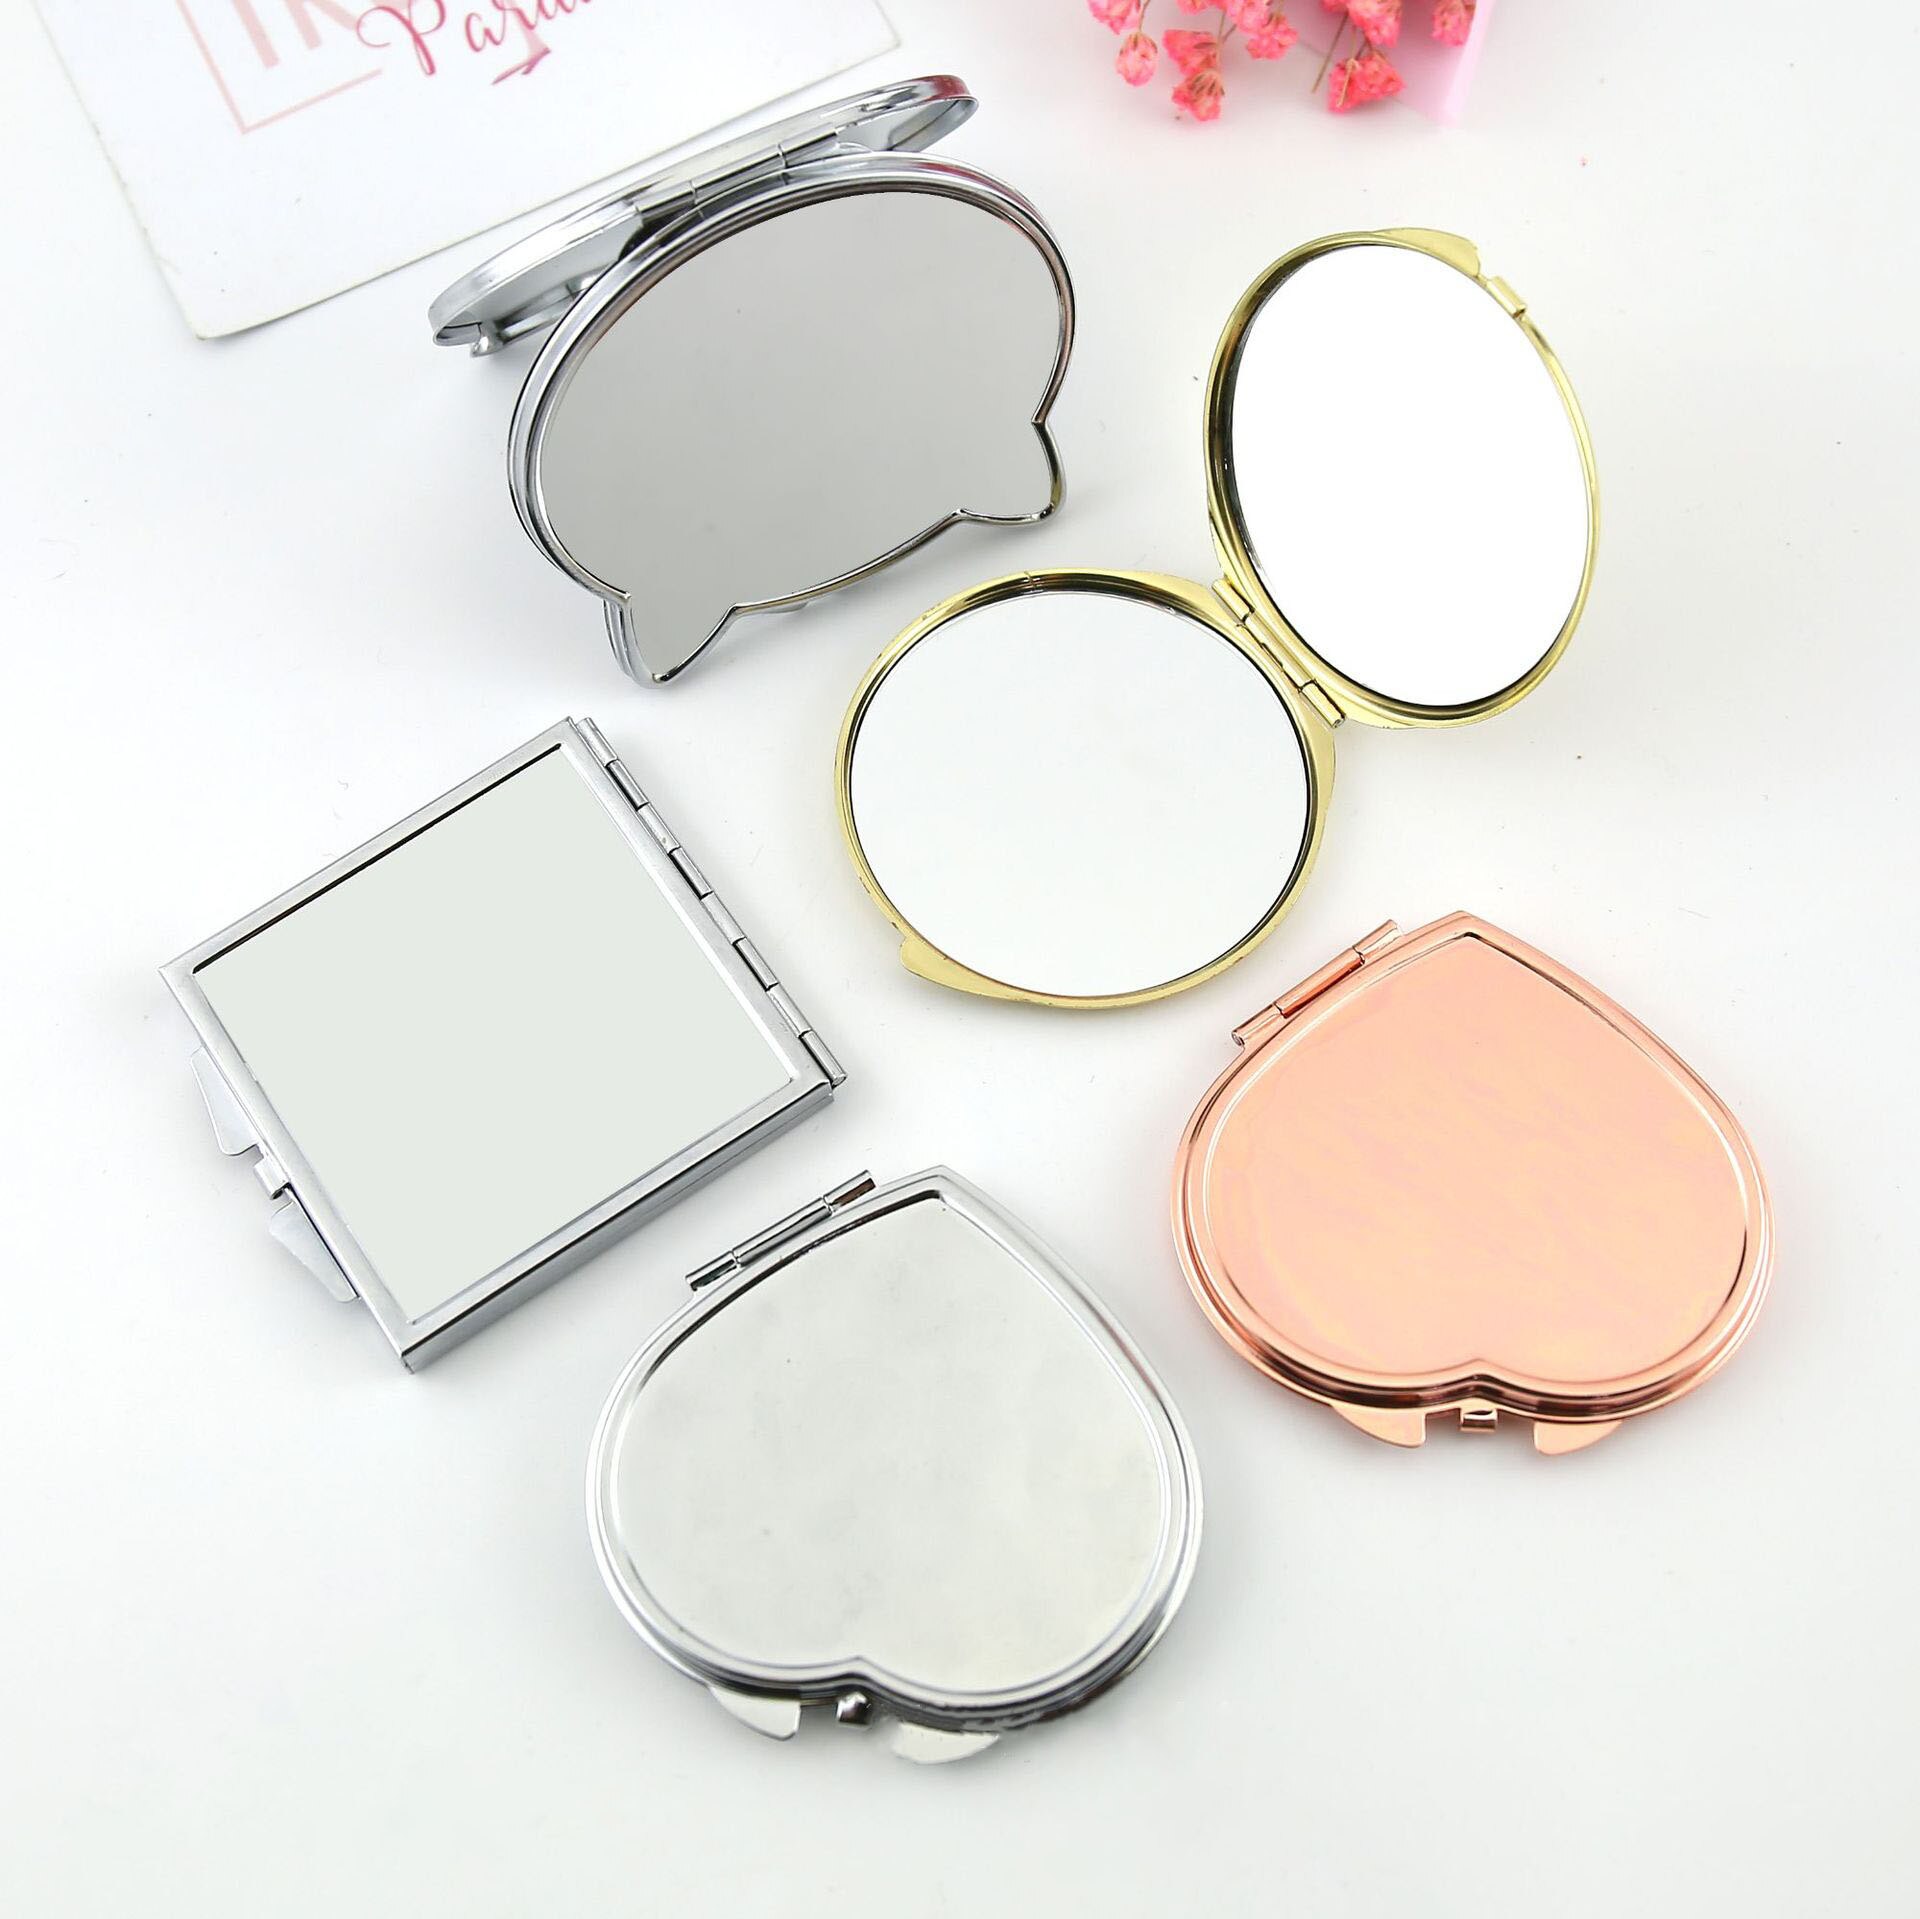 Dubbelzijdige Cosmetische Spiegel Pocket Compact Make-Up Spiegel Ronde Hart Folding Make Up Spiegel Reizen Draagbare Vergrootglas Spiegel